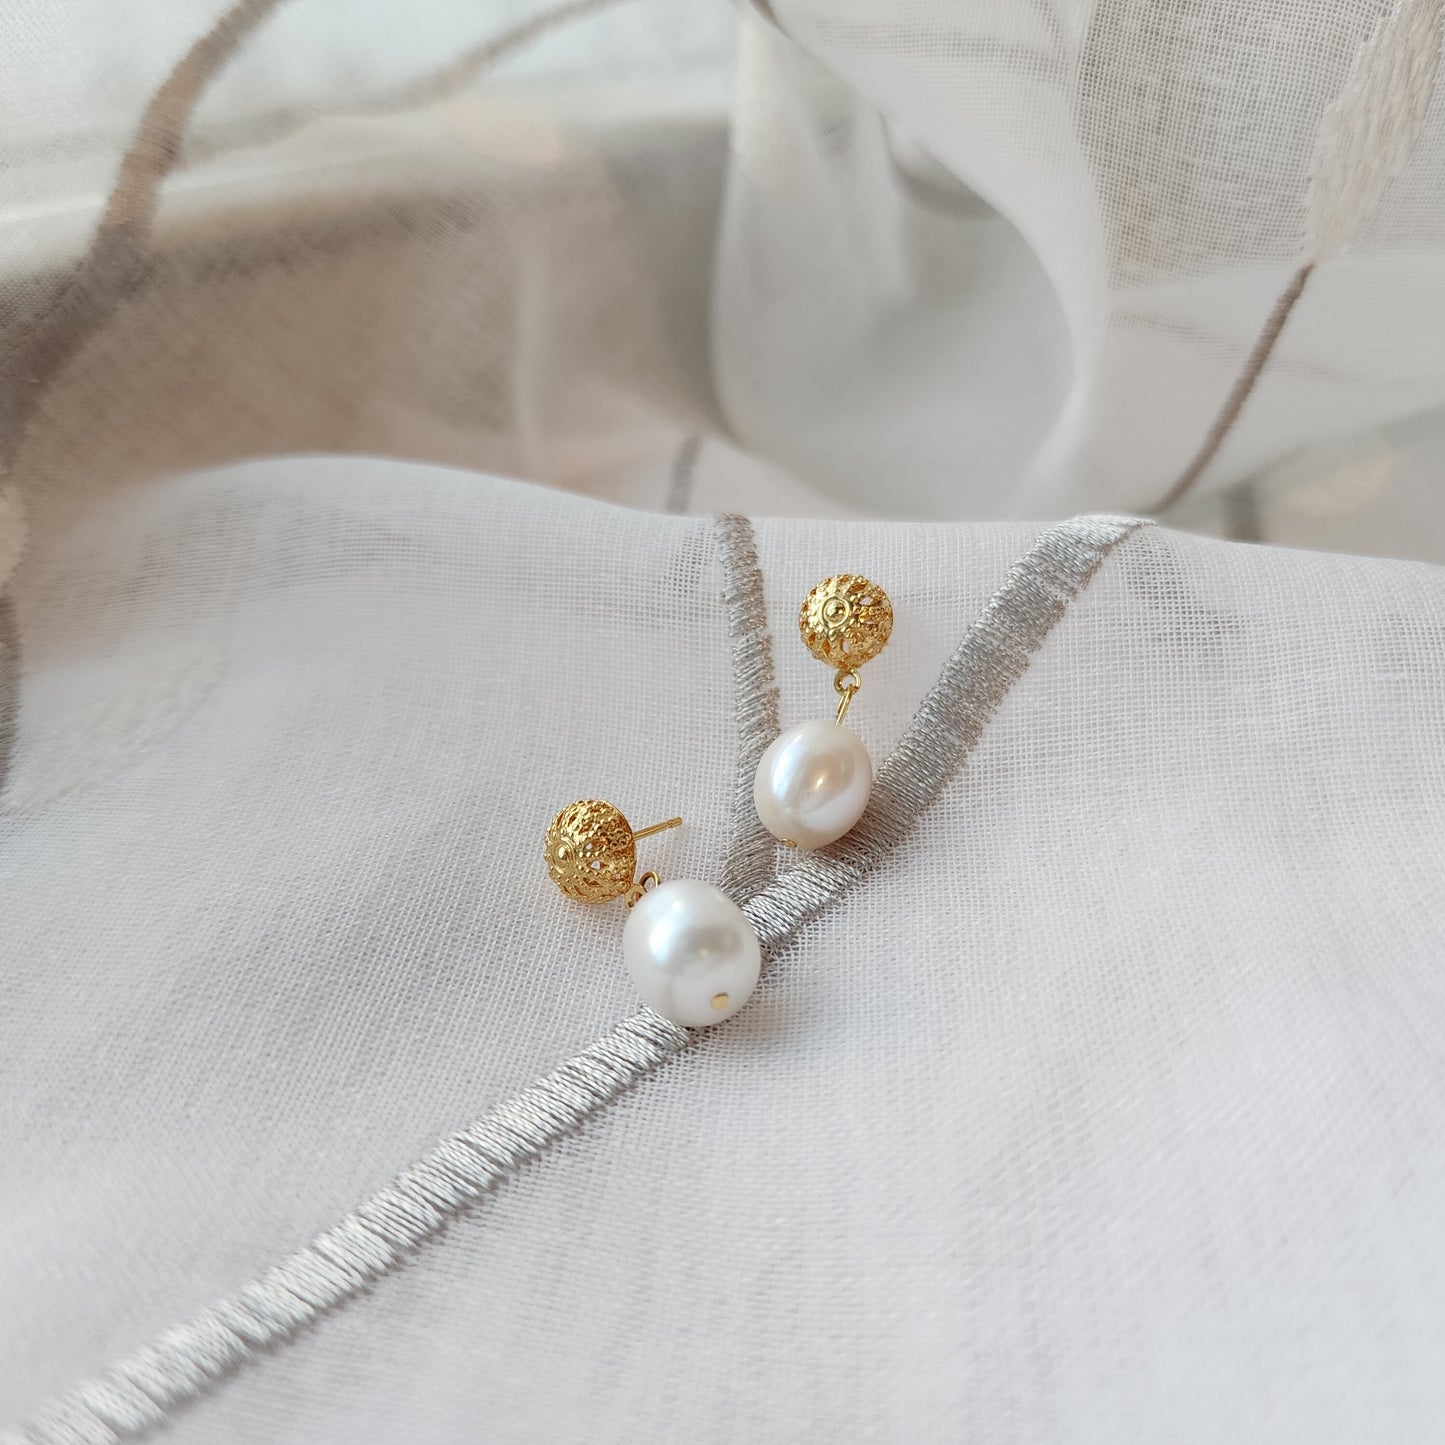 Laura flower simple pearl earrings, pearl drop earrings, 14k gold plated stud earrings, gift for her